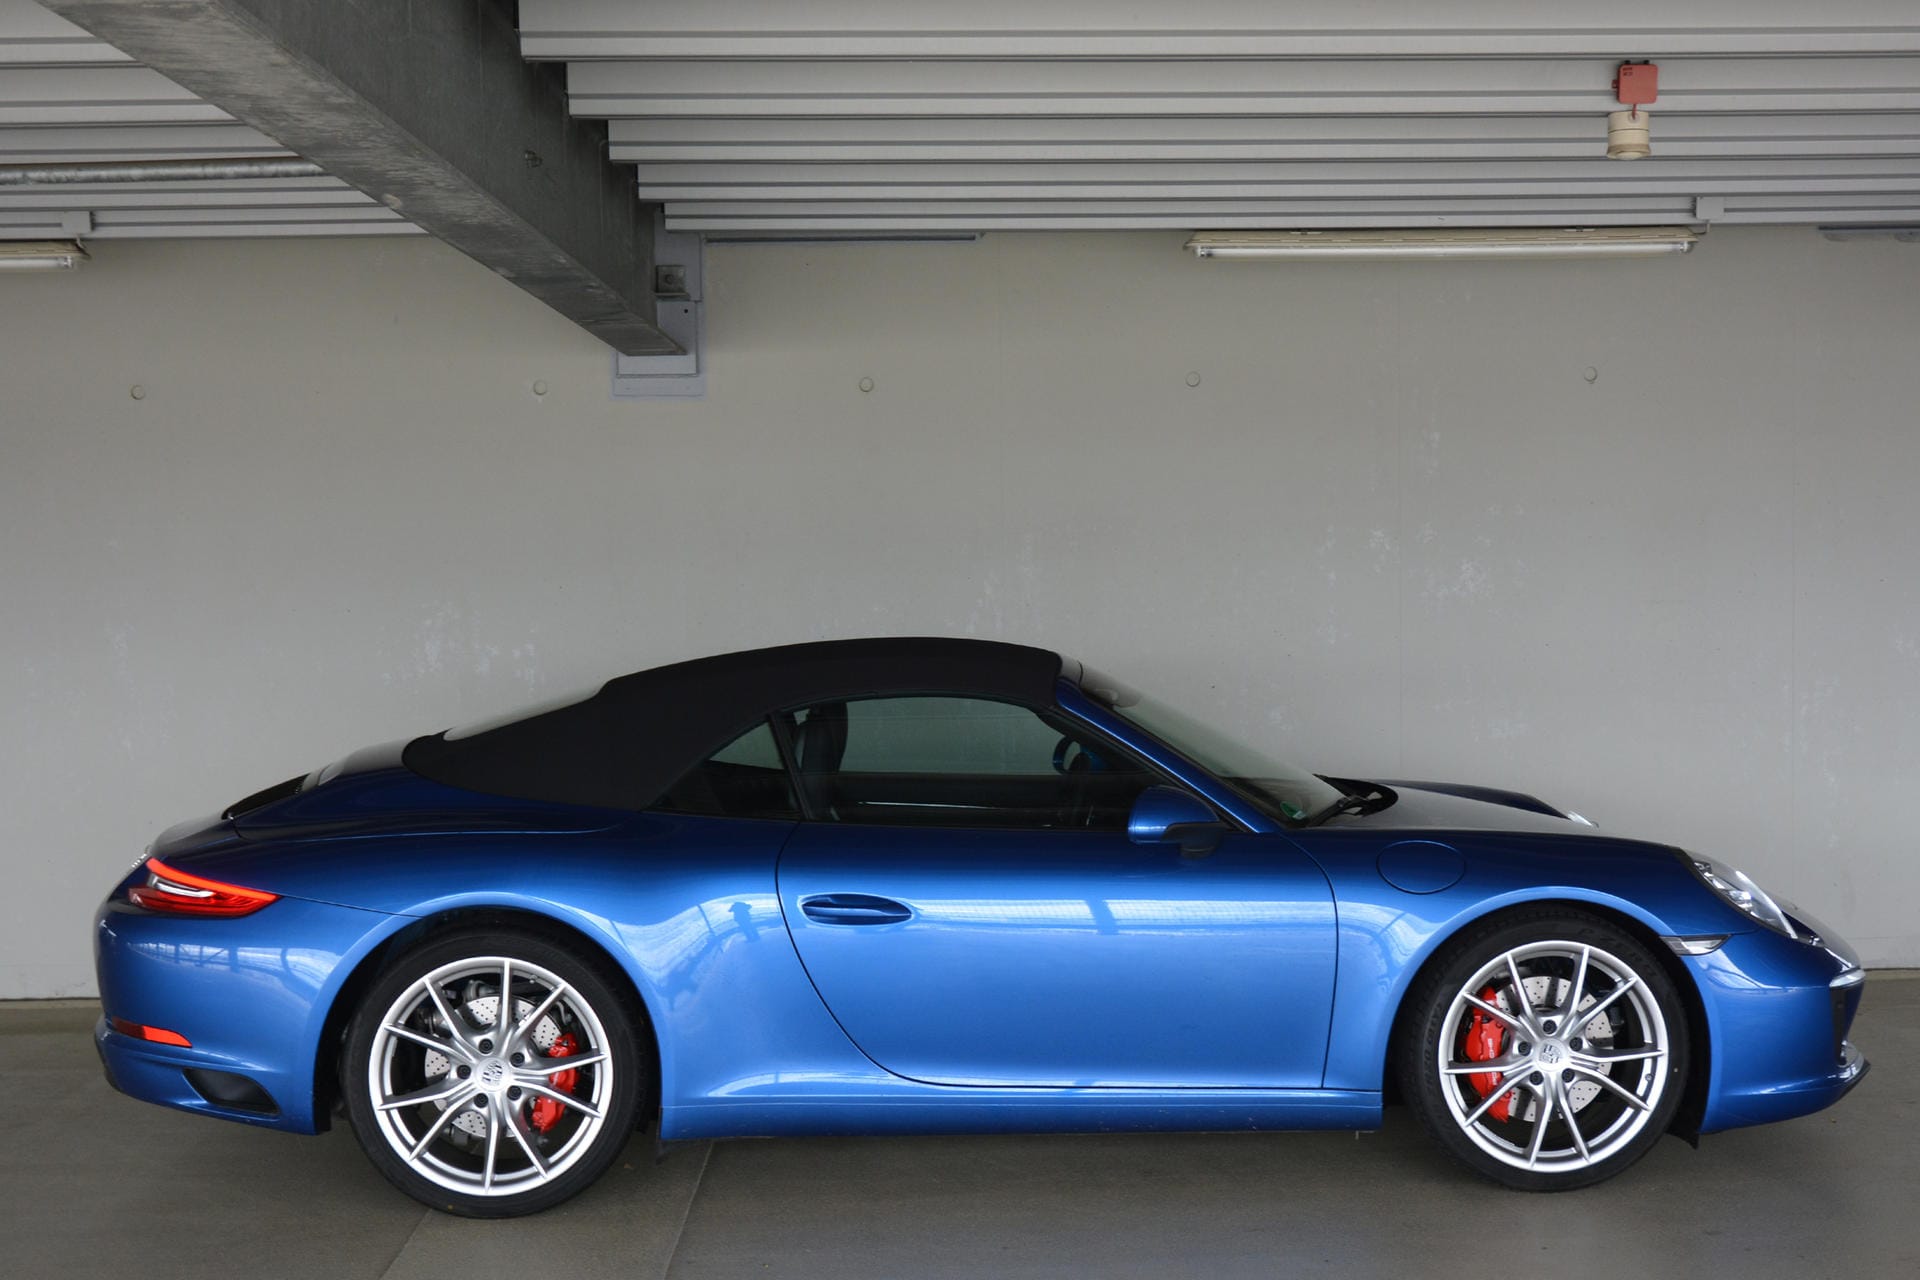 Drei Liter Hubraum, zwei Turbolader, 420 PS stark und eine Top-Speed von 304 km/h: das Porsche 911 Carrera S Cabriolet.